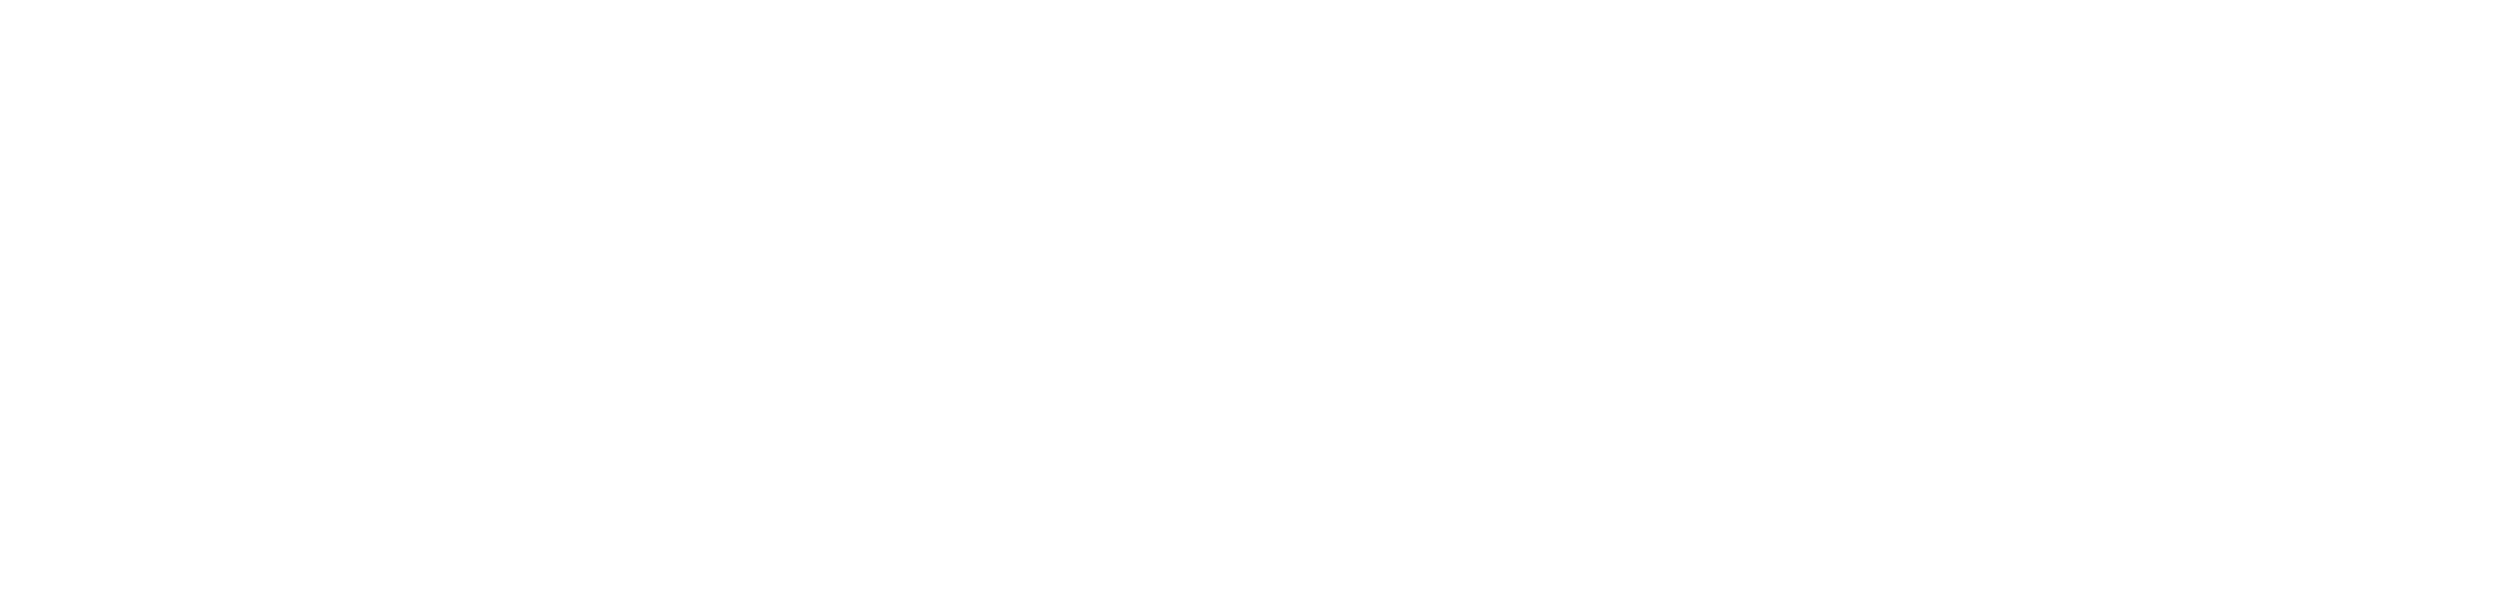 omniaXmedia